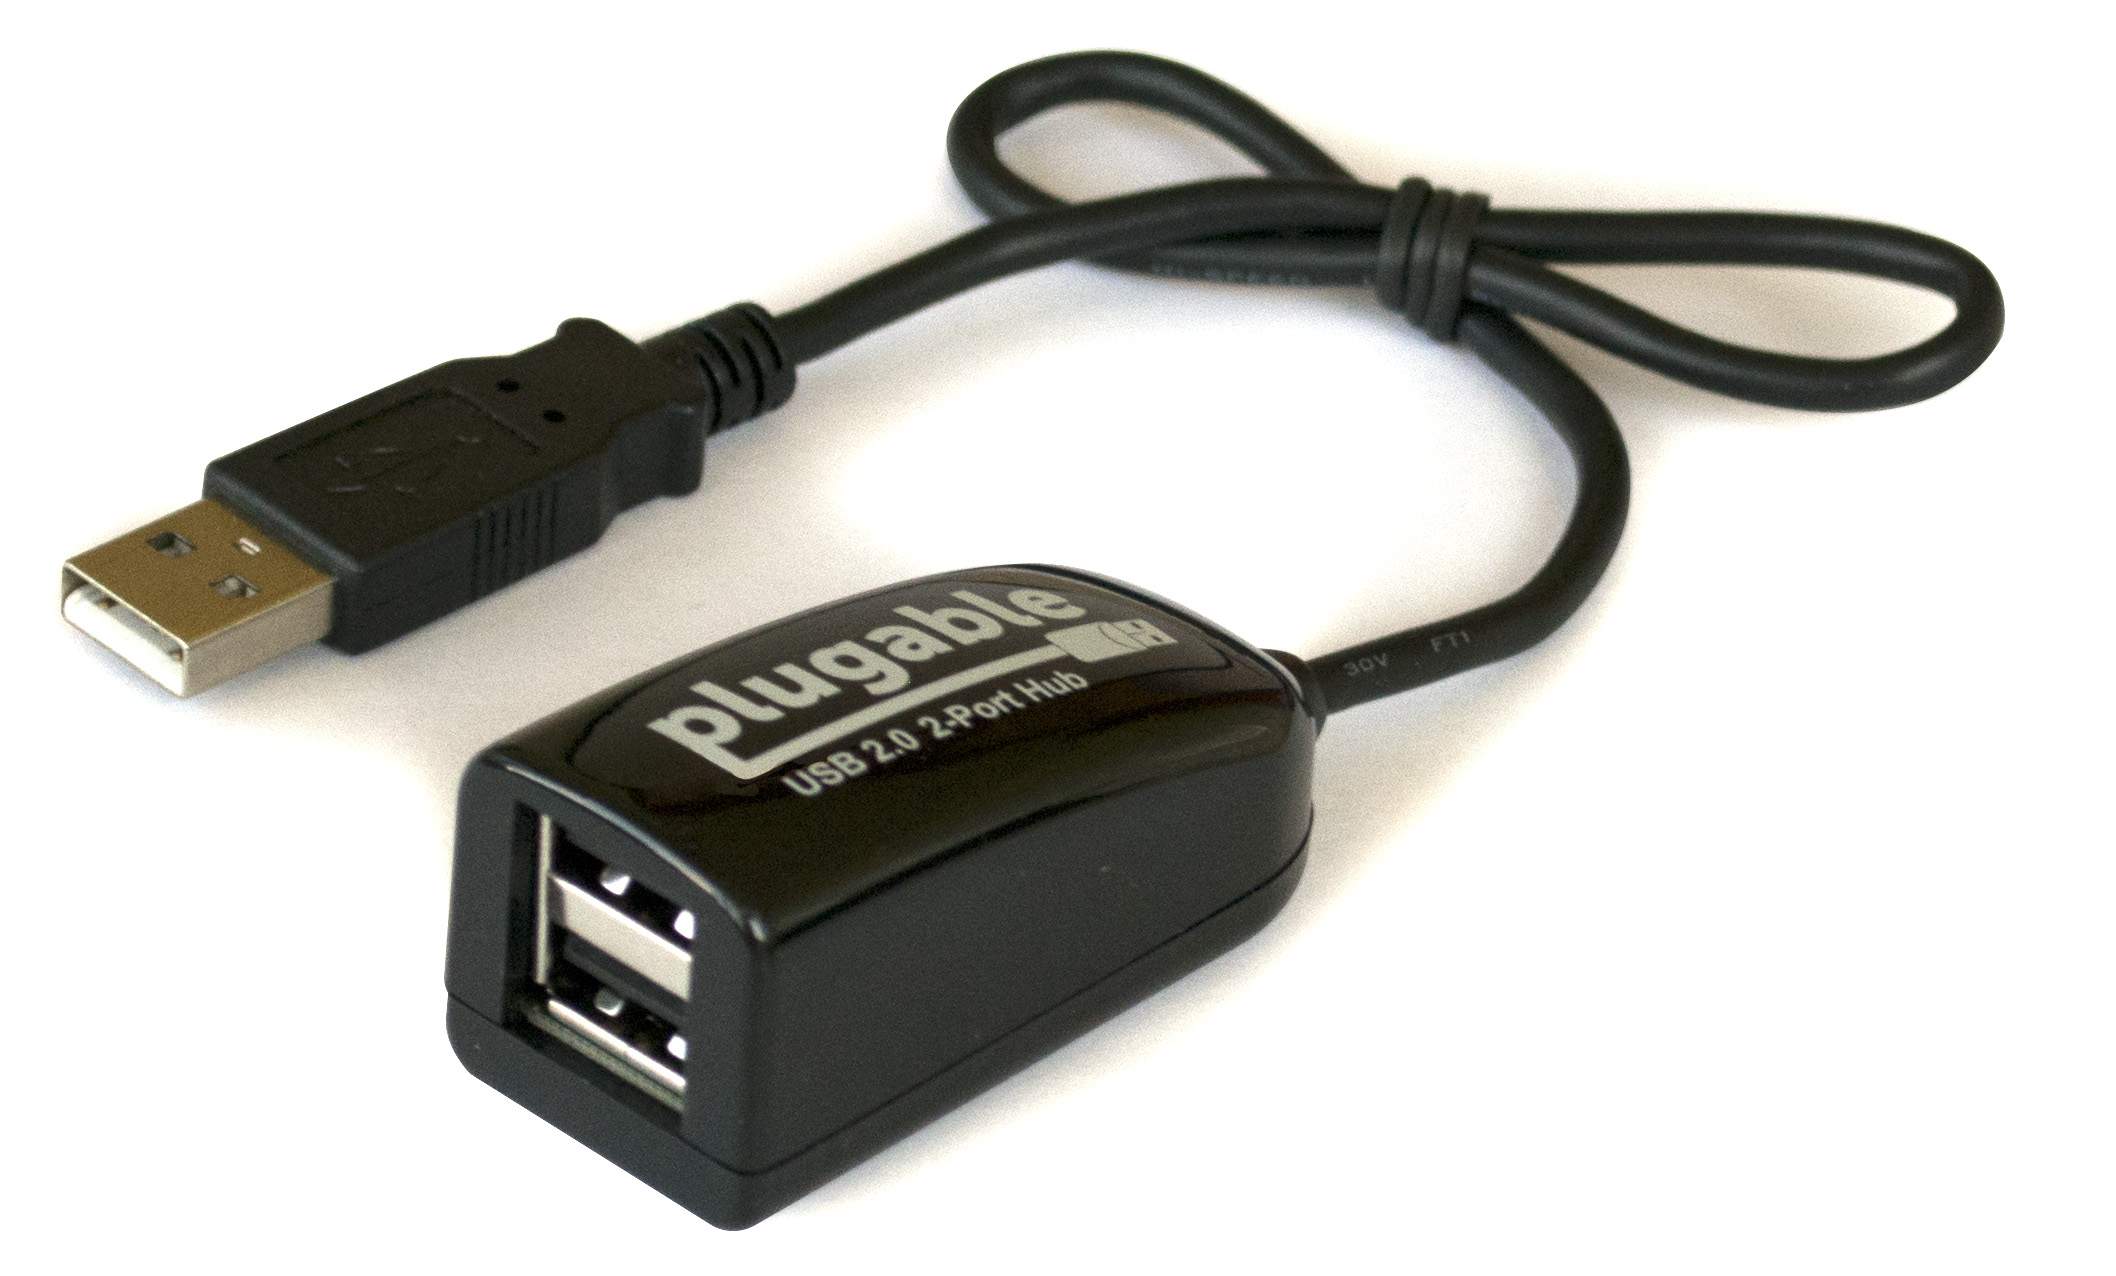 Usb v 2.0. Porto USB 2.0 Type s+Hub. Адаптер USB 2.0 Full-Speed-s-Port. USB 2.0 Hi-Speed Hub d800. 2 USB 2.0 A - USB Mini.